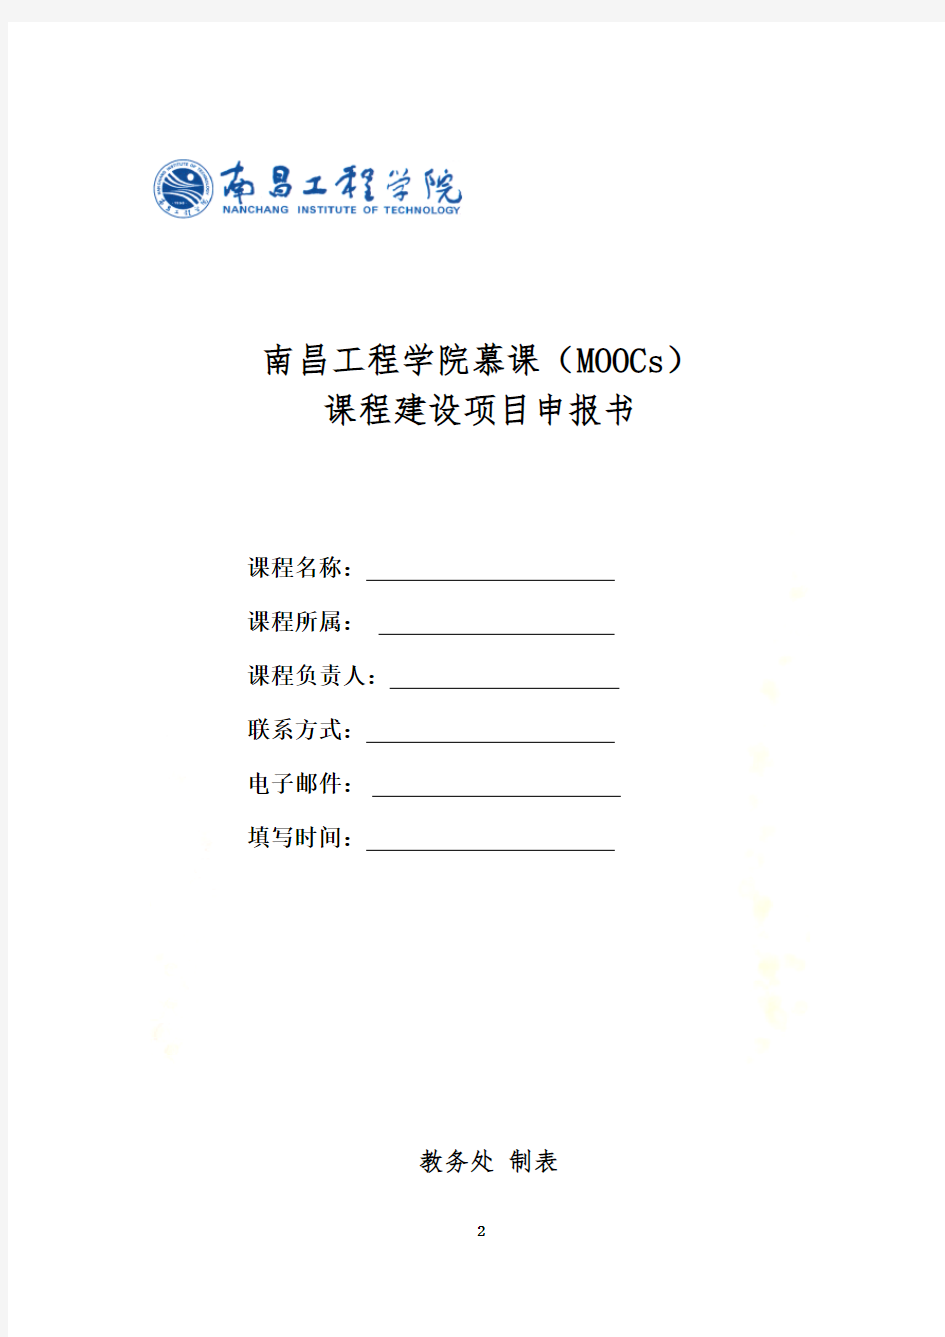 南昌工程学院-慕课课程建设项目申报书